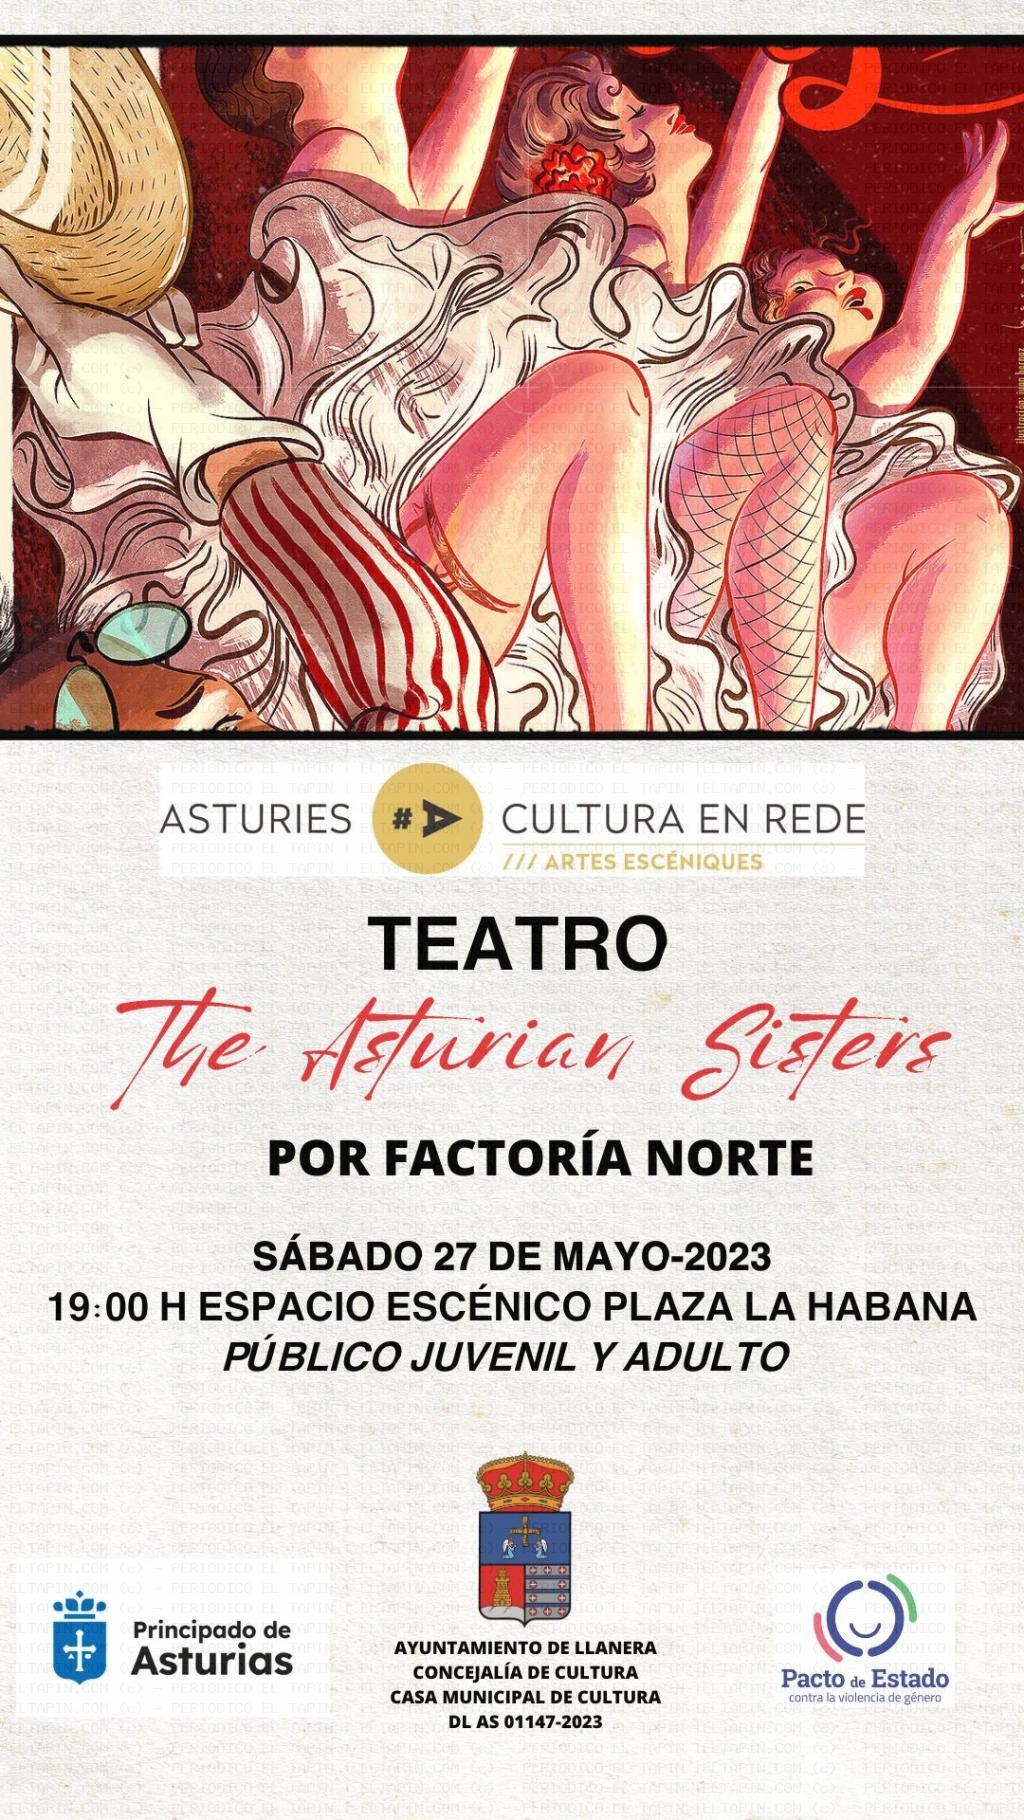 El Tapin - The Asturian Sister se representará el sábado 27 de mayo a las 19 horas en la Plaza de La Habana